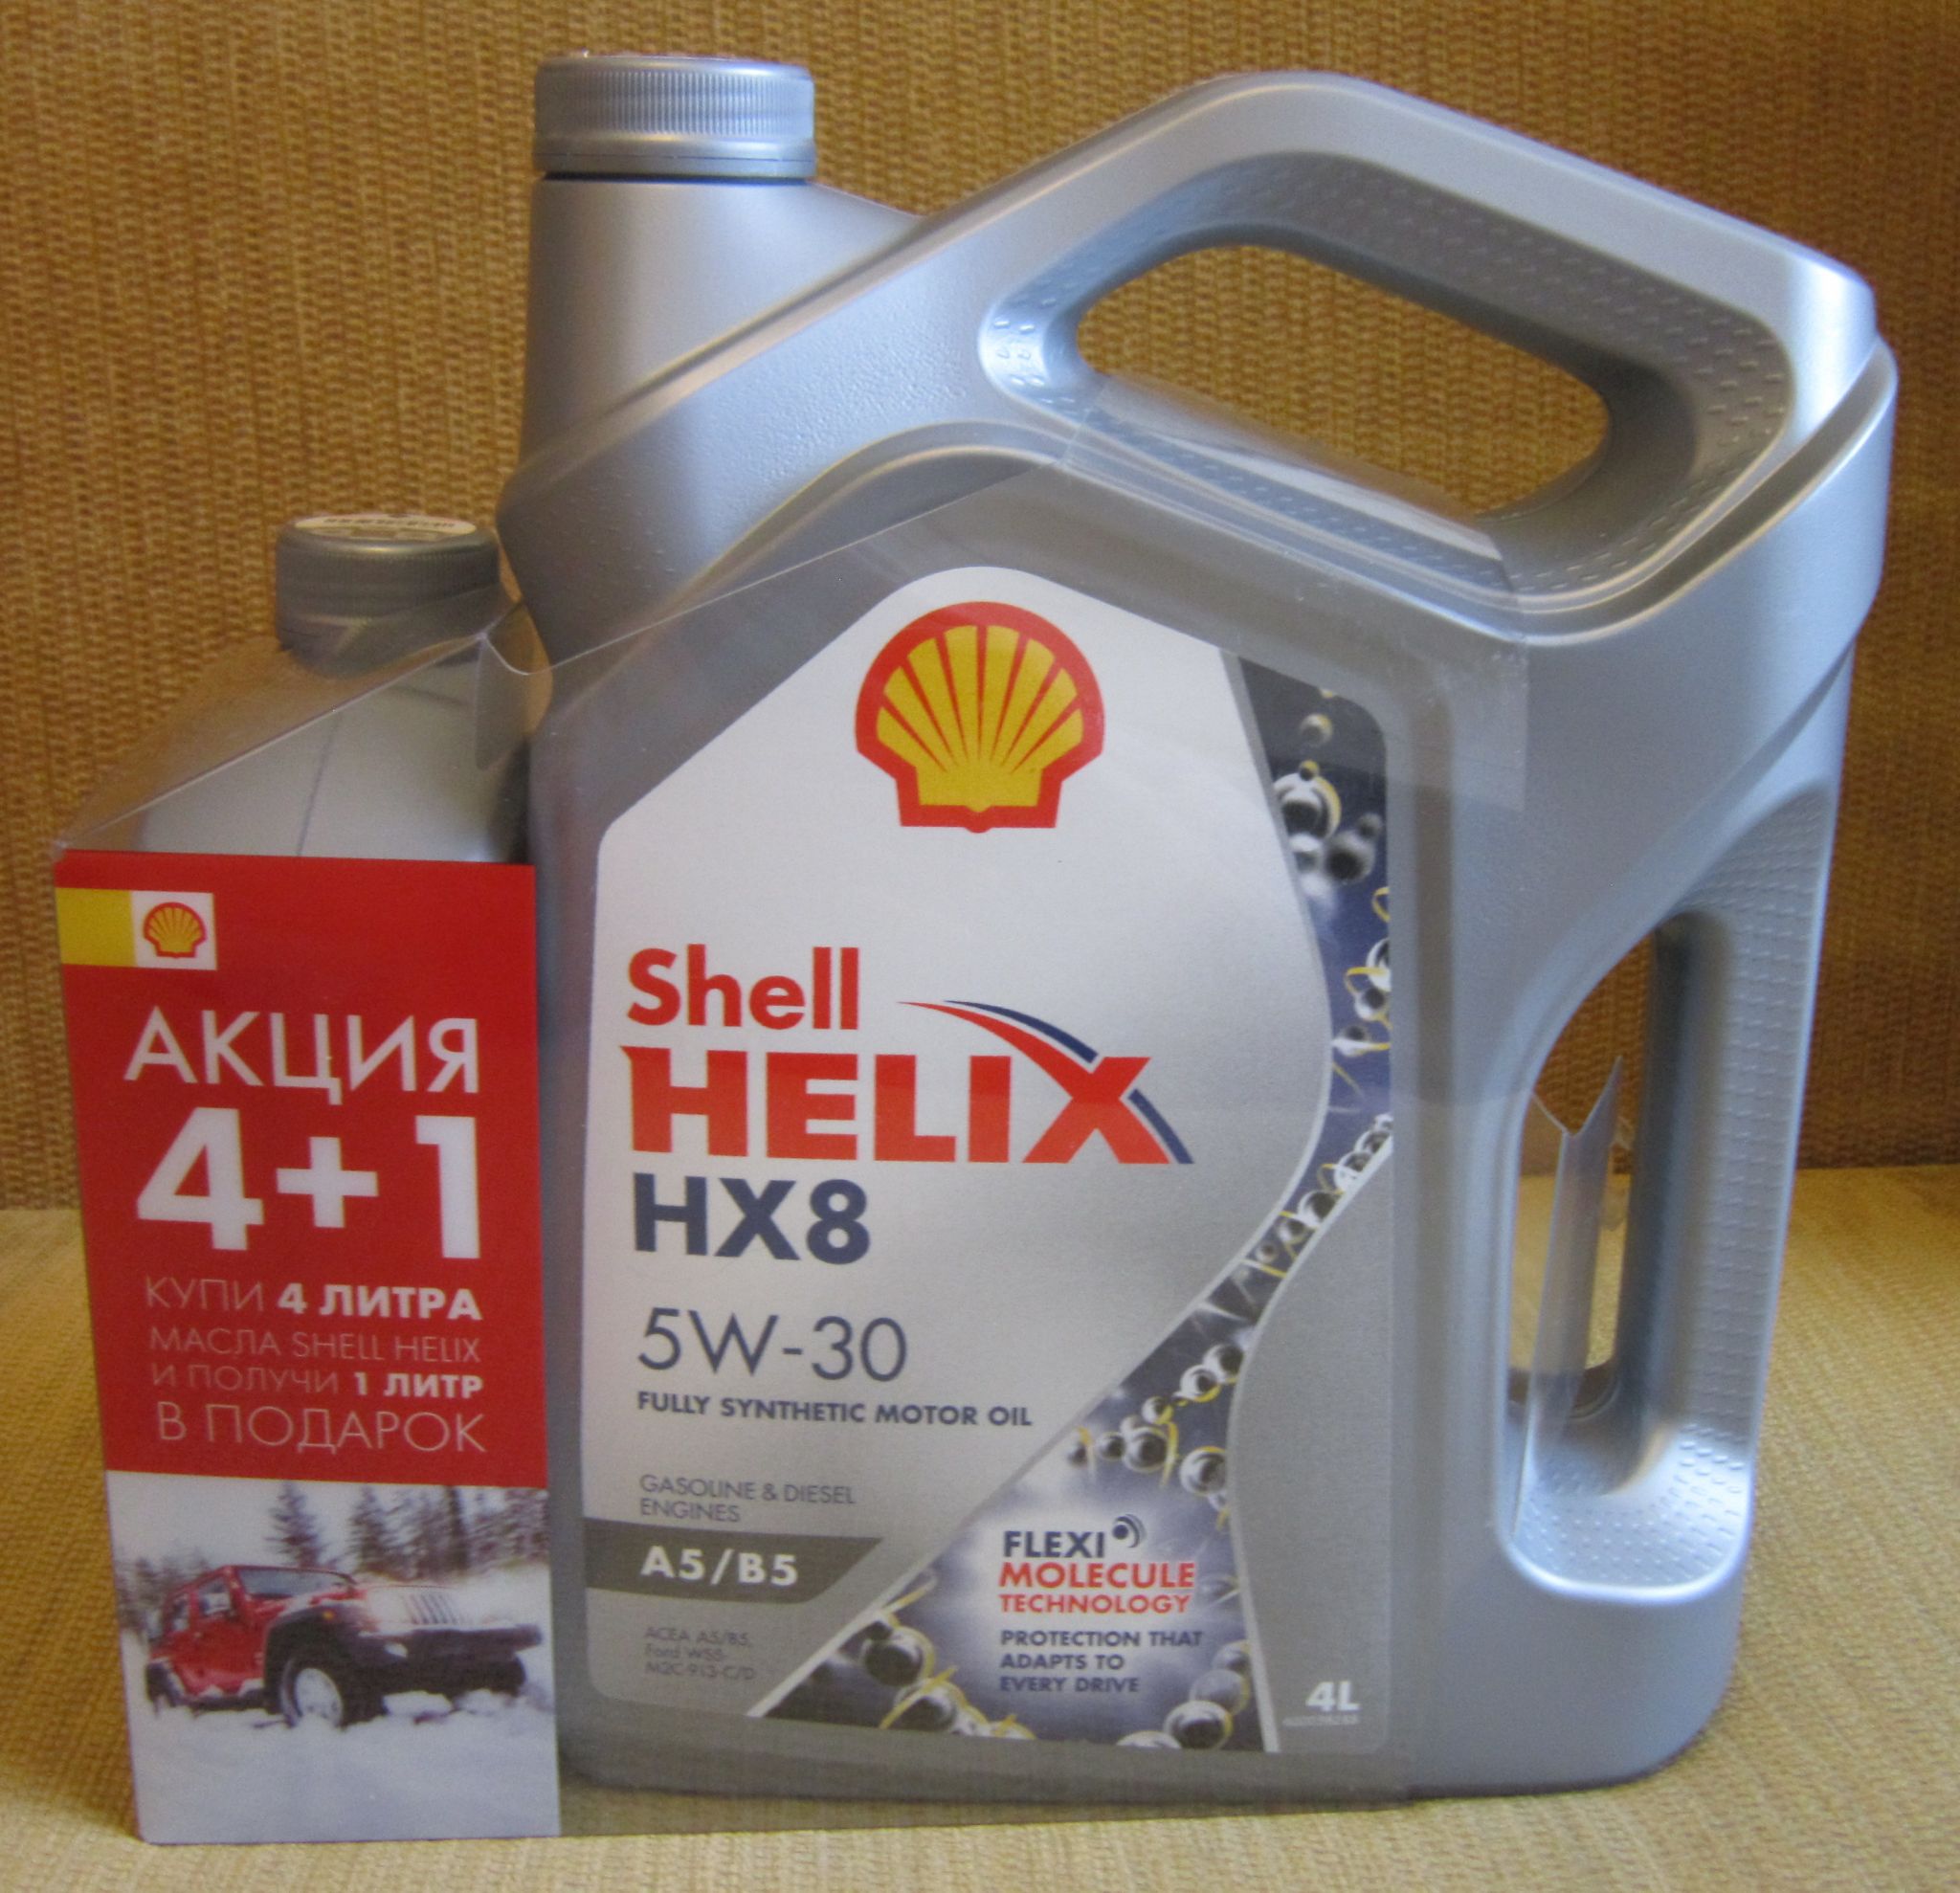 Моторное масло helix hx8 5w 30. Shell hx8 5w30. Shell hx8 5w30 a5/b5. Моторное масло синтетическое Shell Helix hx8 a5/b5 5w-30. Моторное масло Shell Helix hx8 a5/b5 5w-30 синтетическое 4 л.